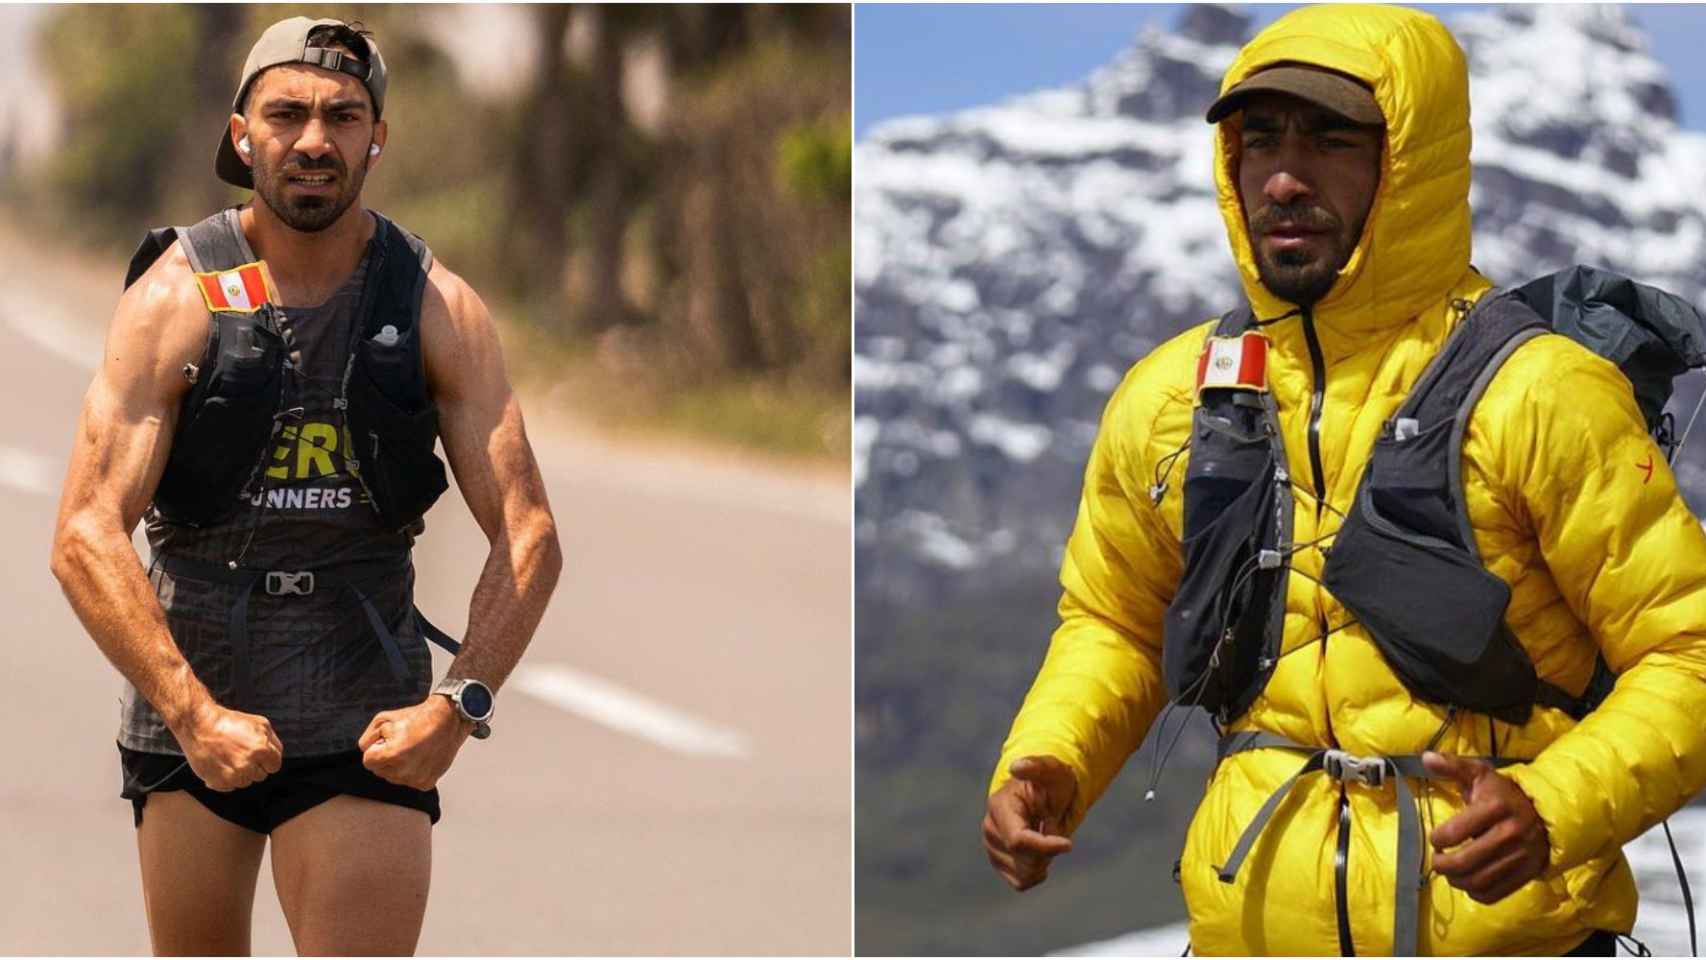 Savas Çoban haciendo frente al calor y al frío en su gran reto de ultramaratones